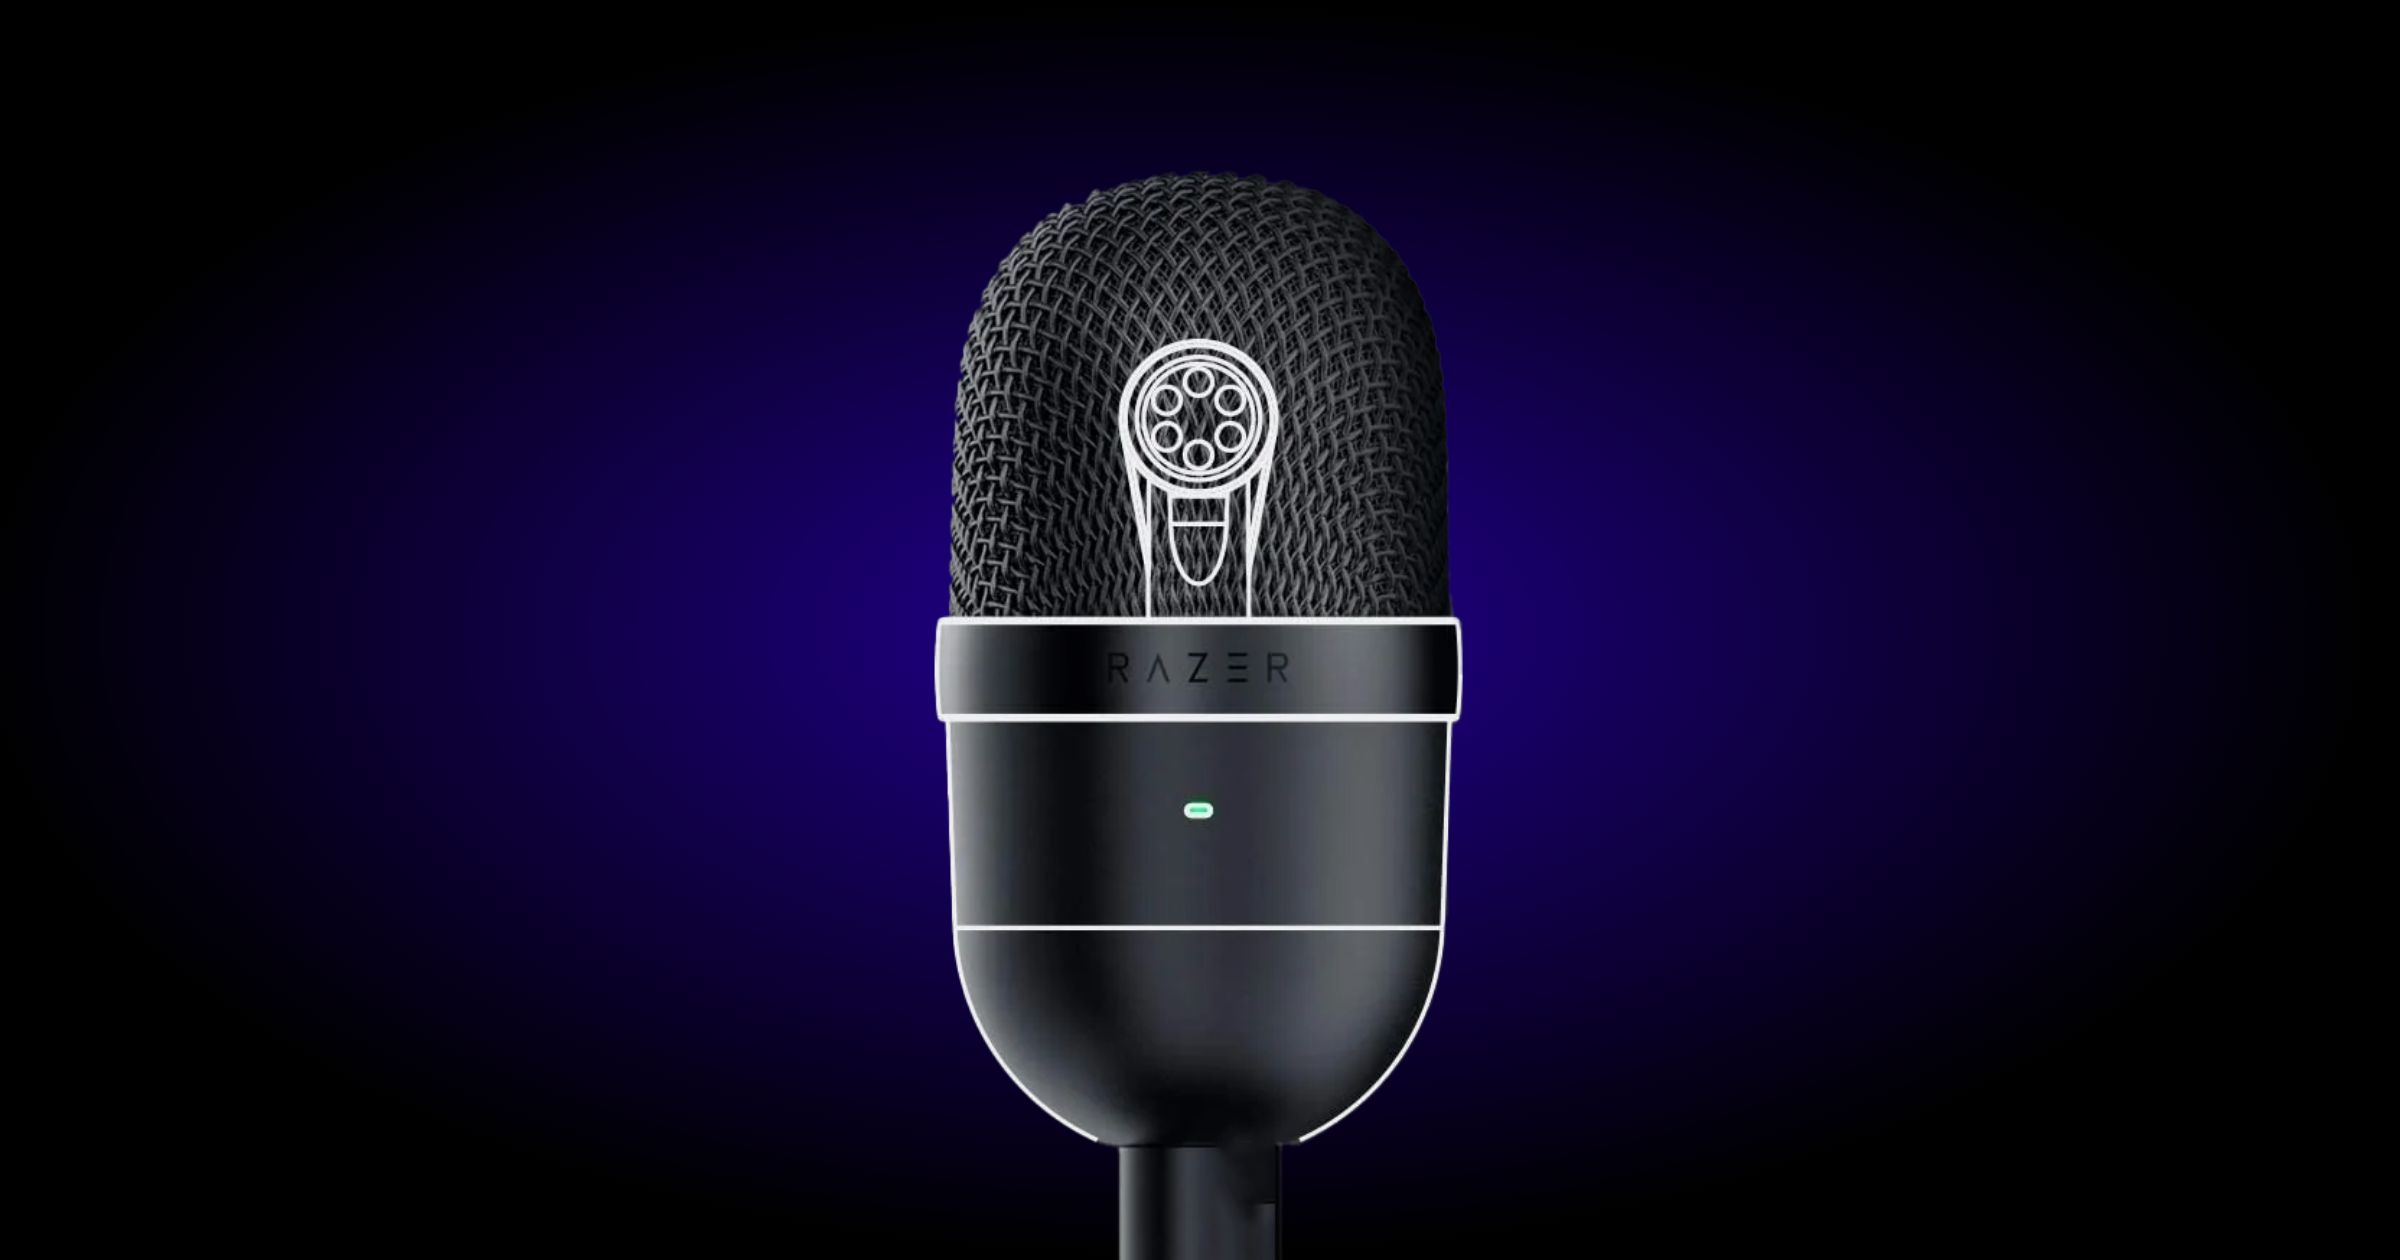 Buy RAZER Seiren Mini Microphone - Black